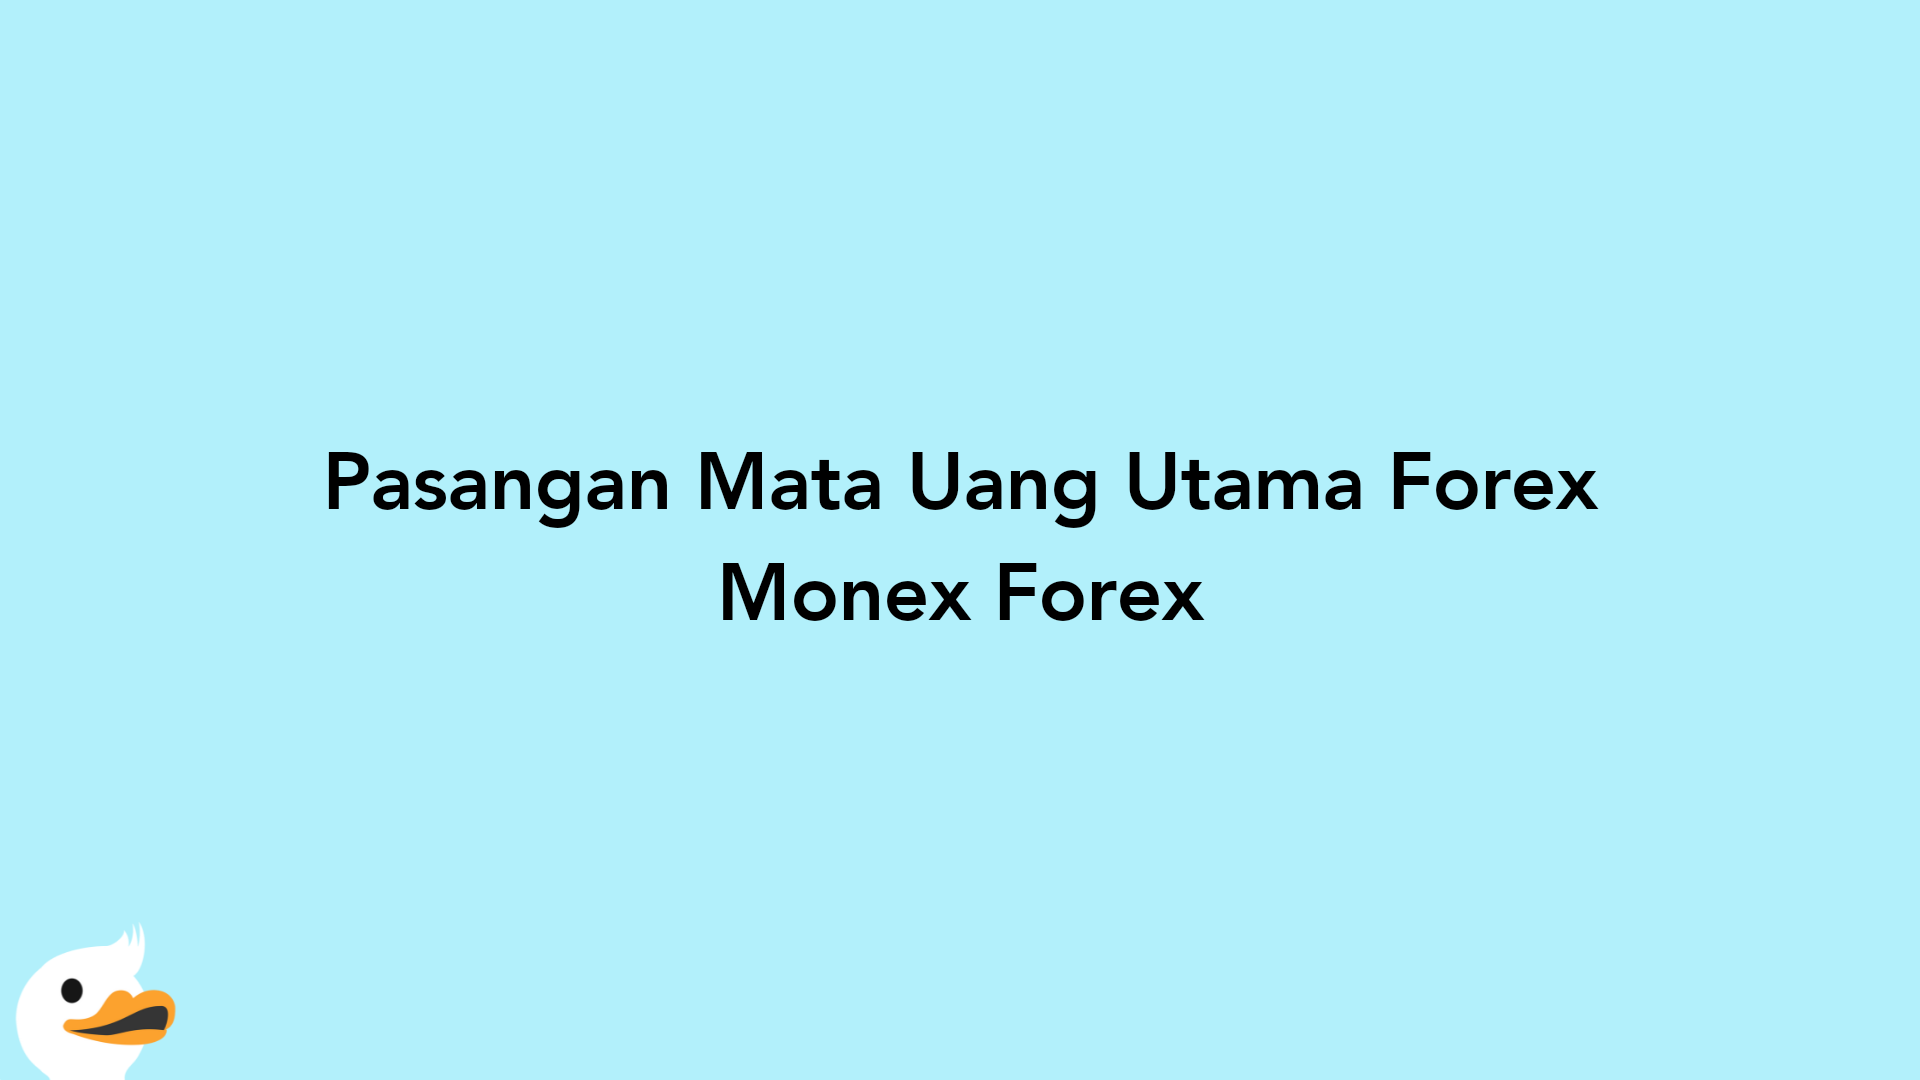 Pasangan Mata Uang Utama Forex Monex Forex